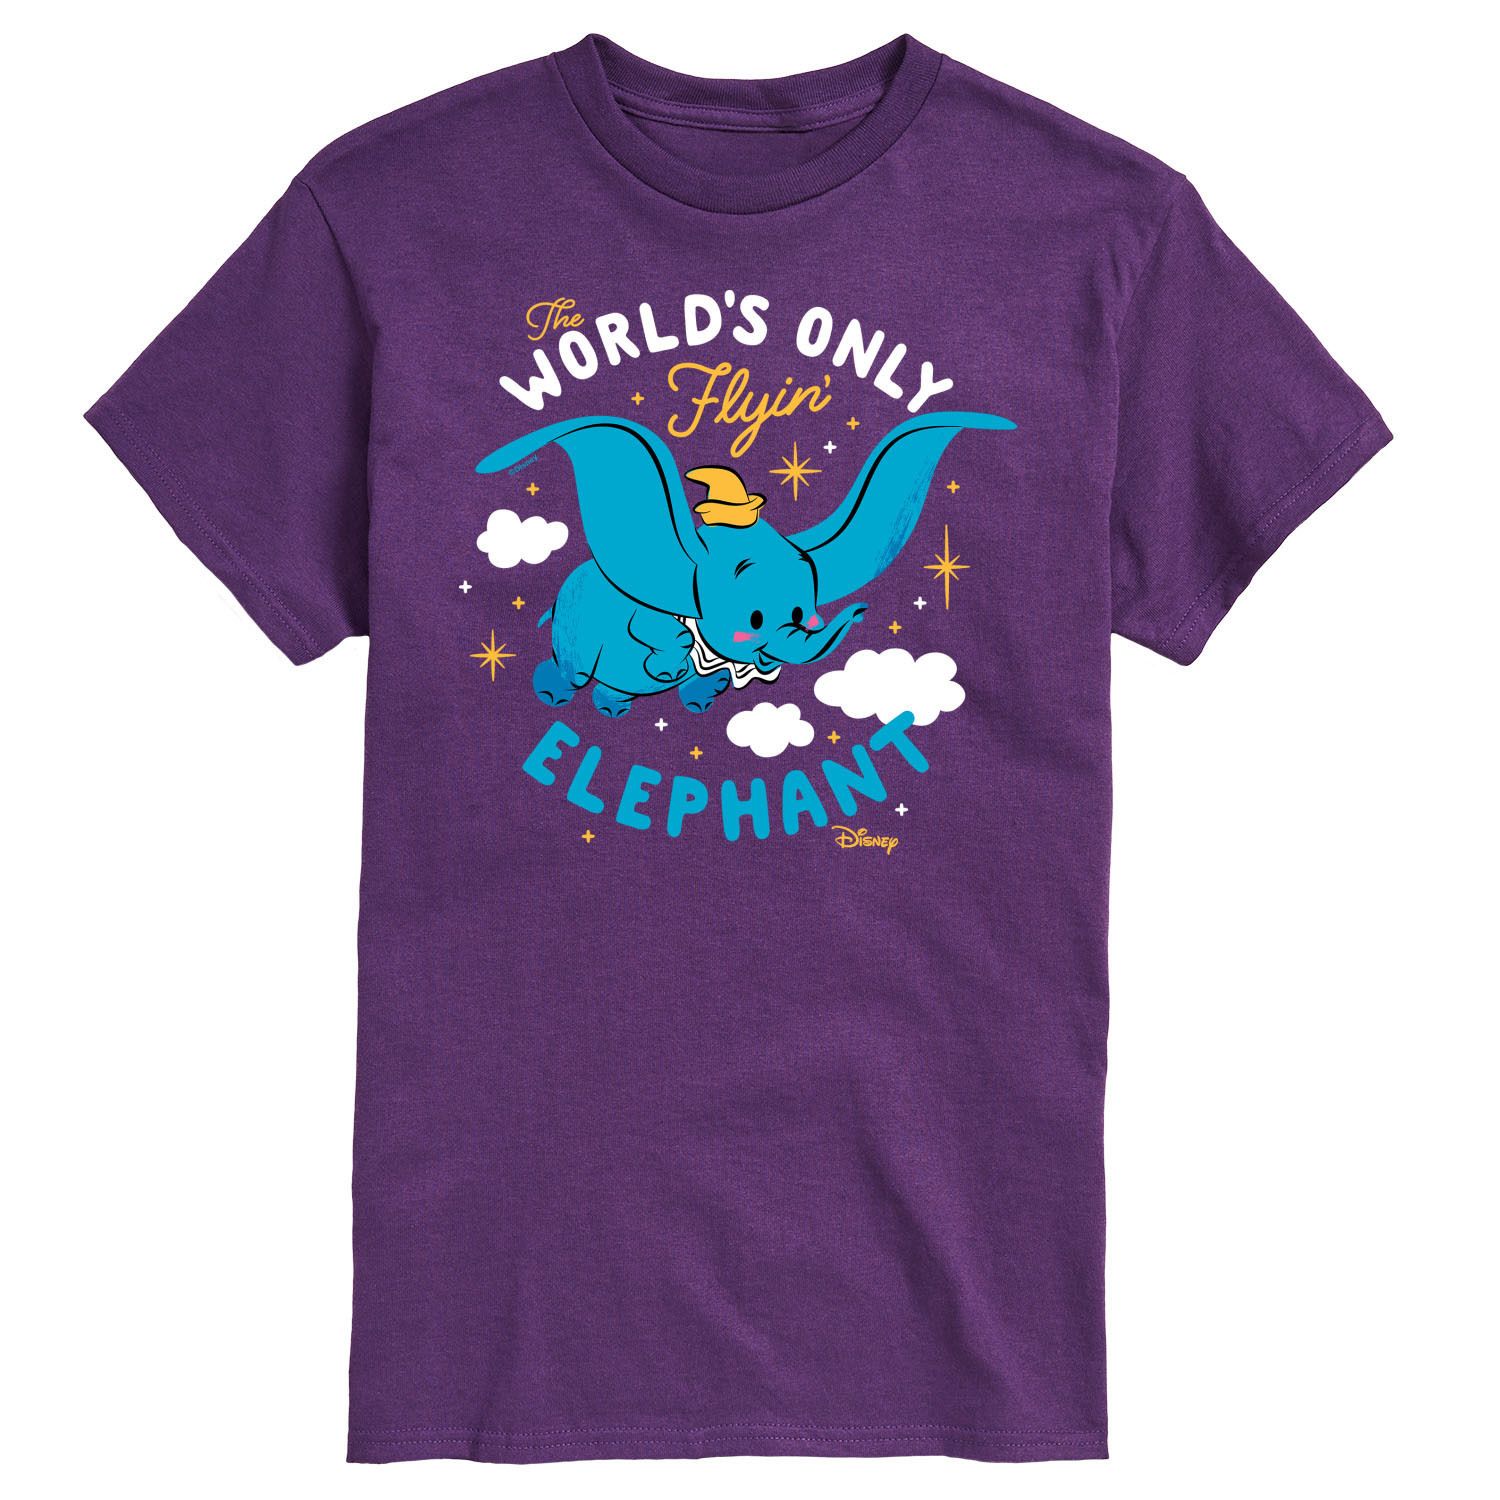 Мужская футболка с изображением летающего слона Disney's Dumbo